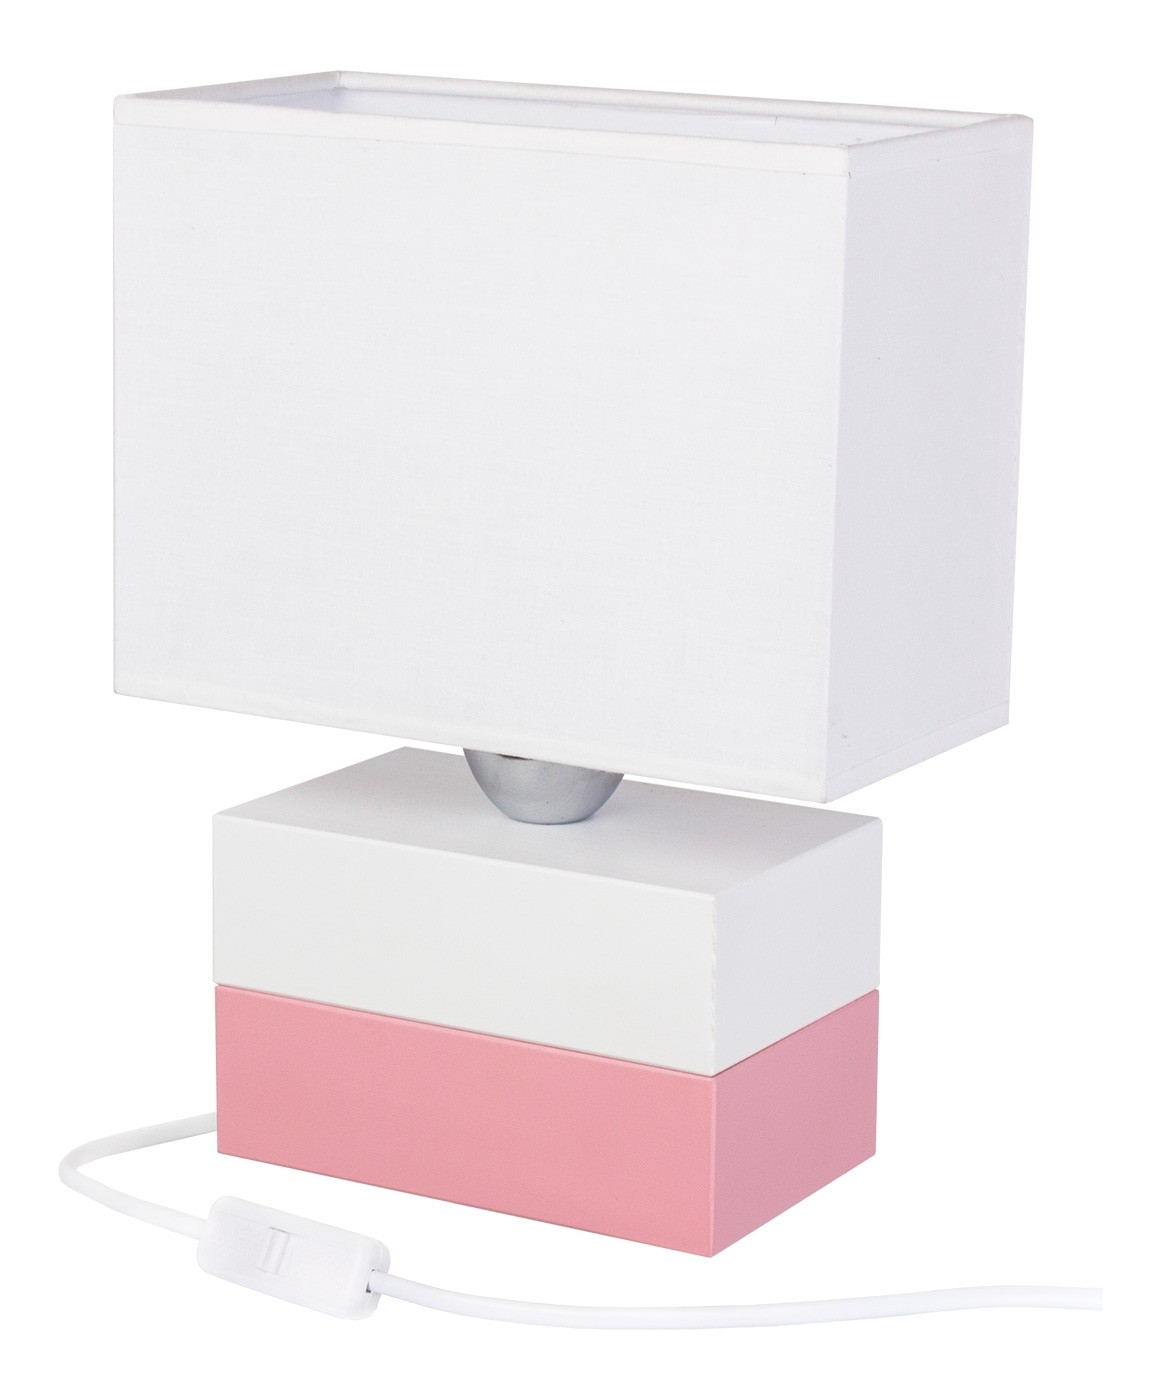 Lampa stołowa Colorato różowo-biała